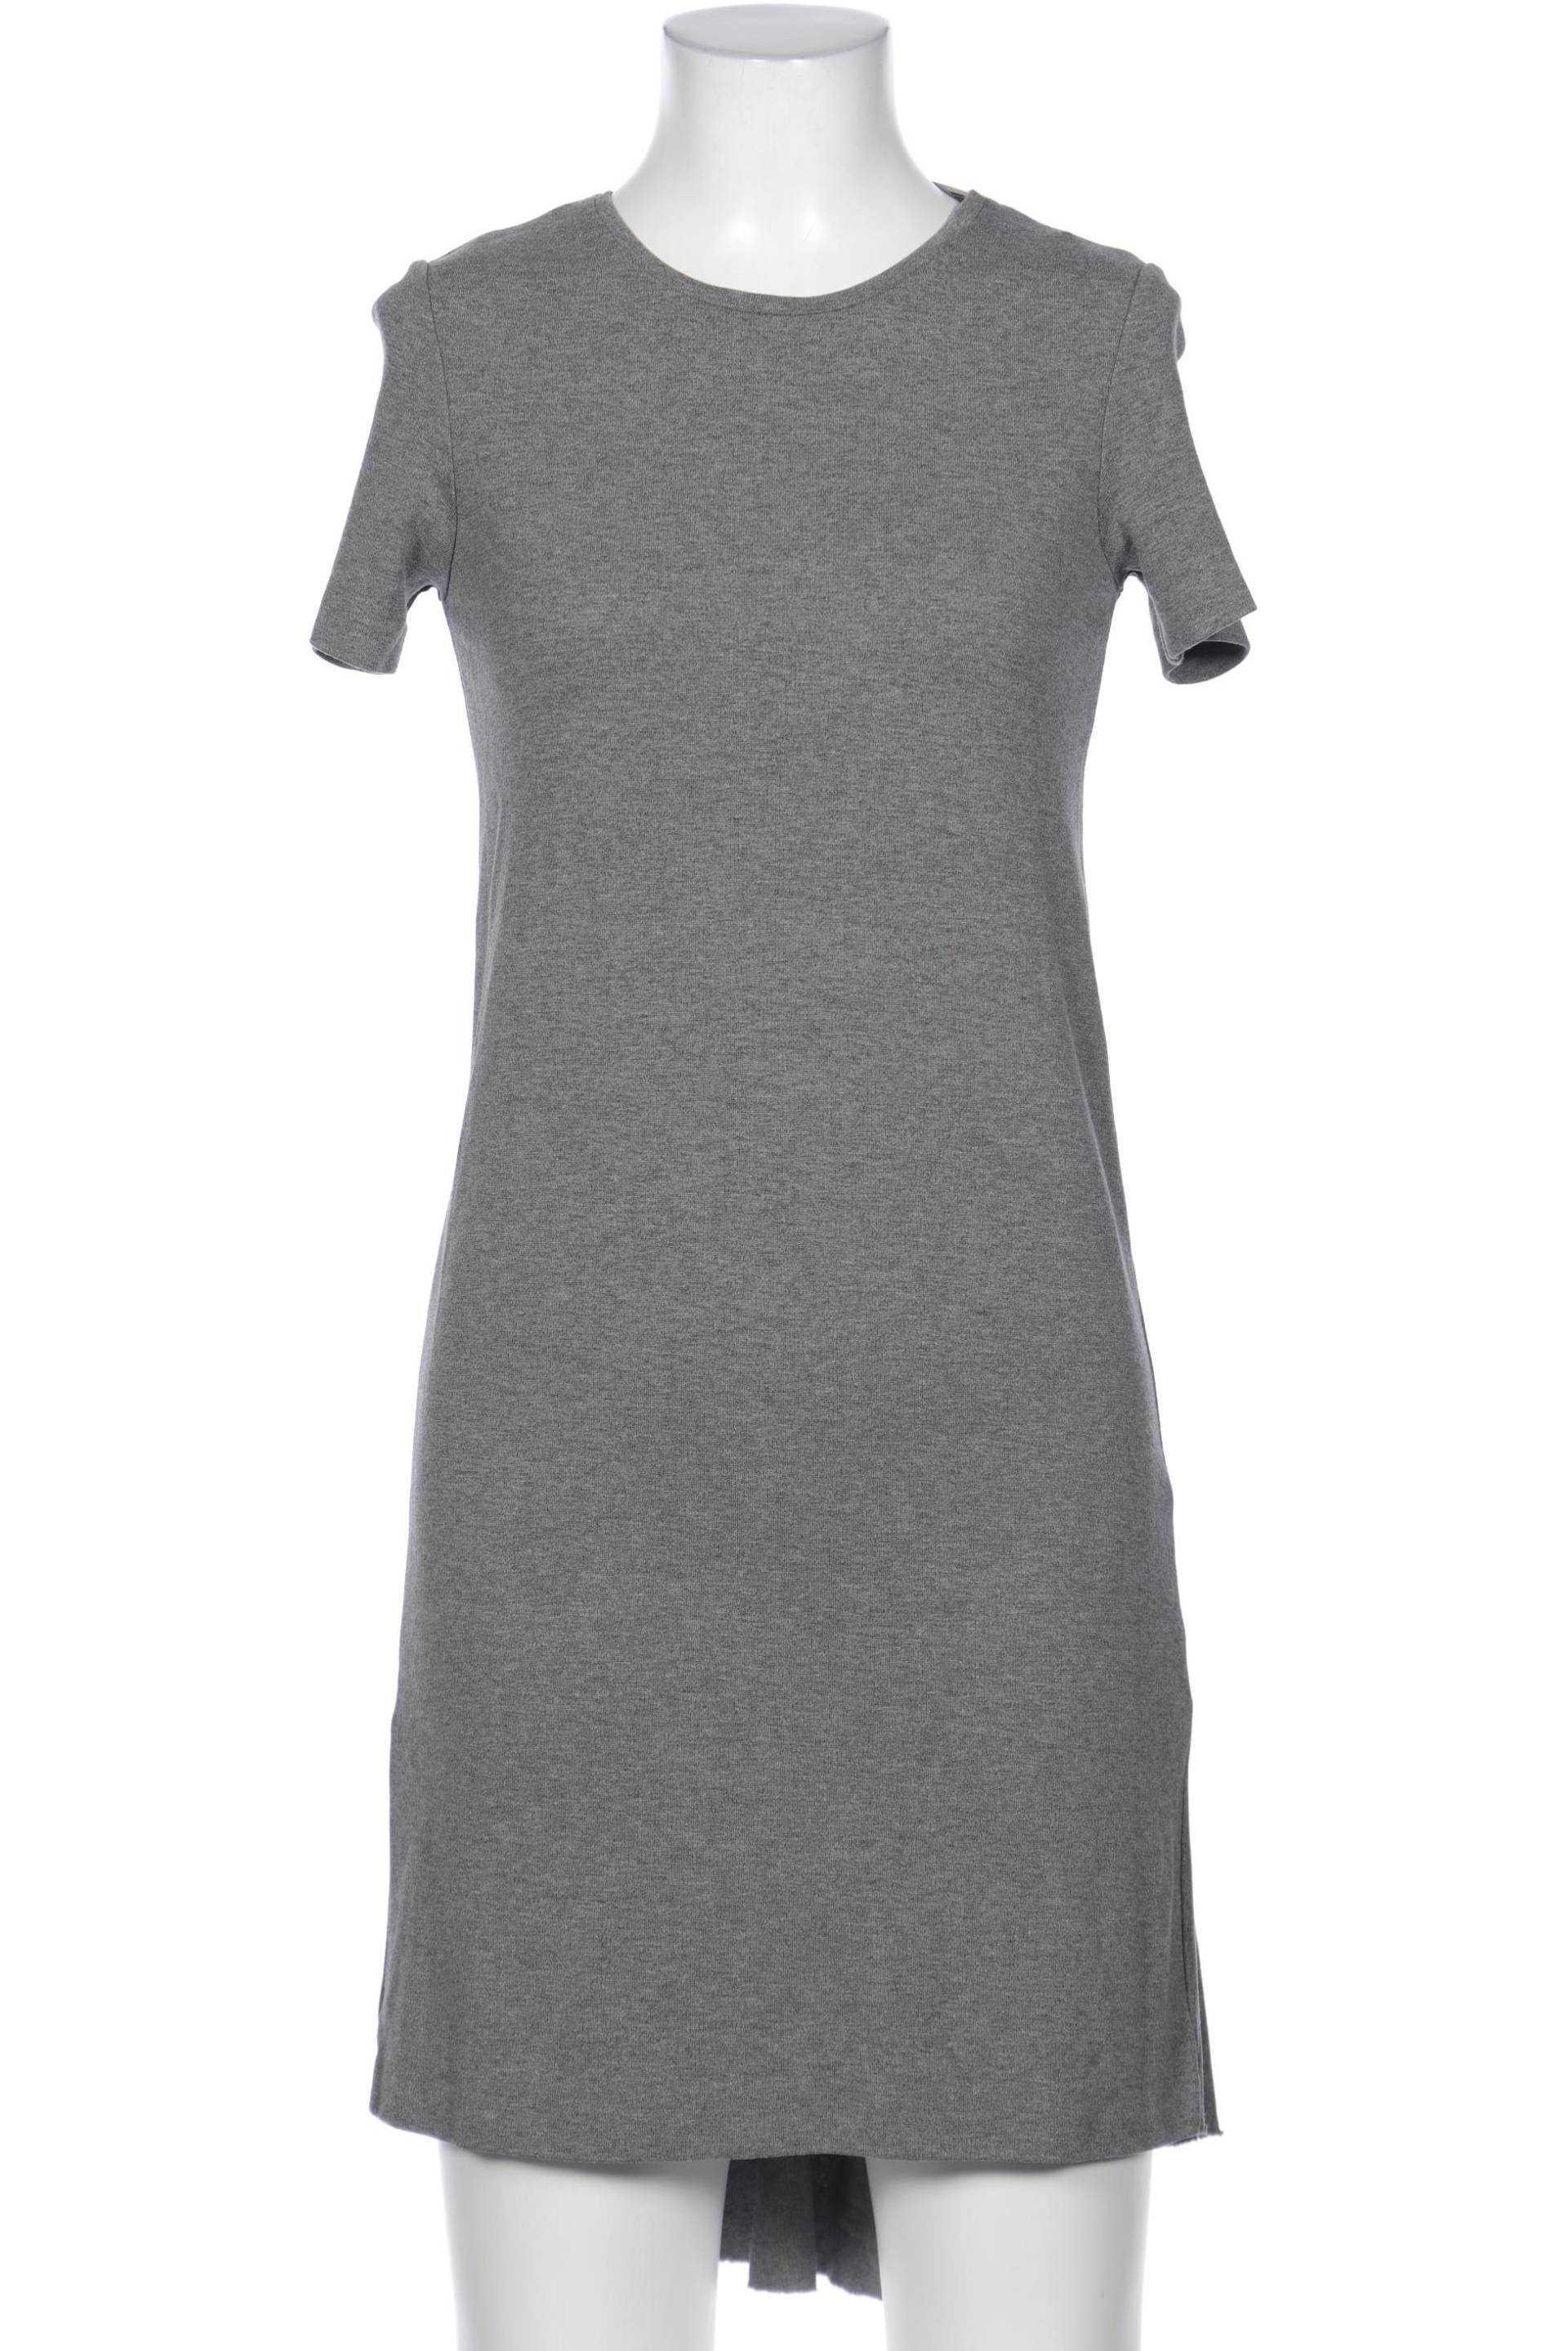 COS Damen Kleid, grau, Gr. 34 von COS